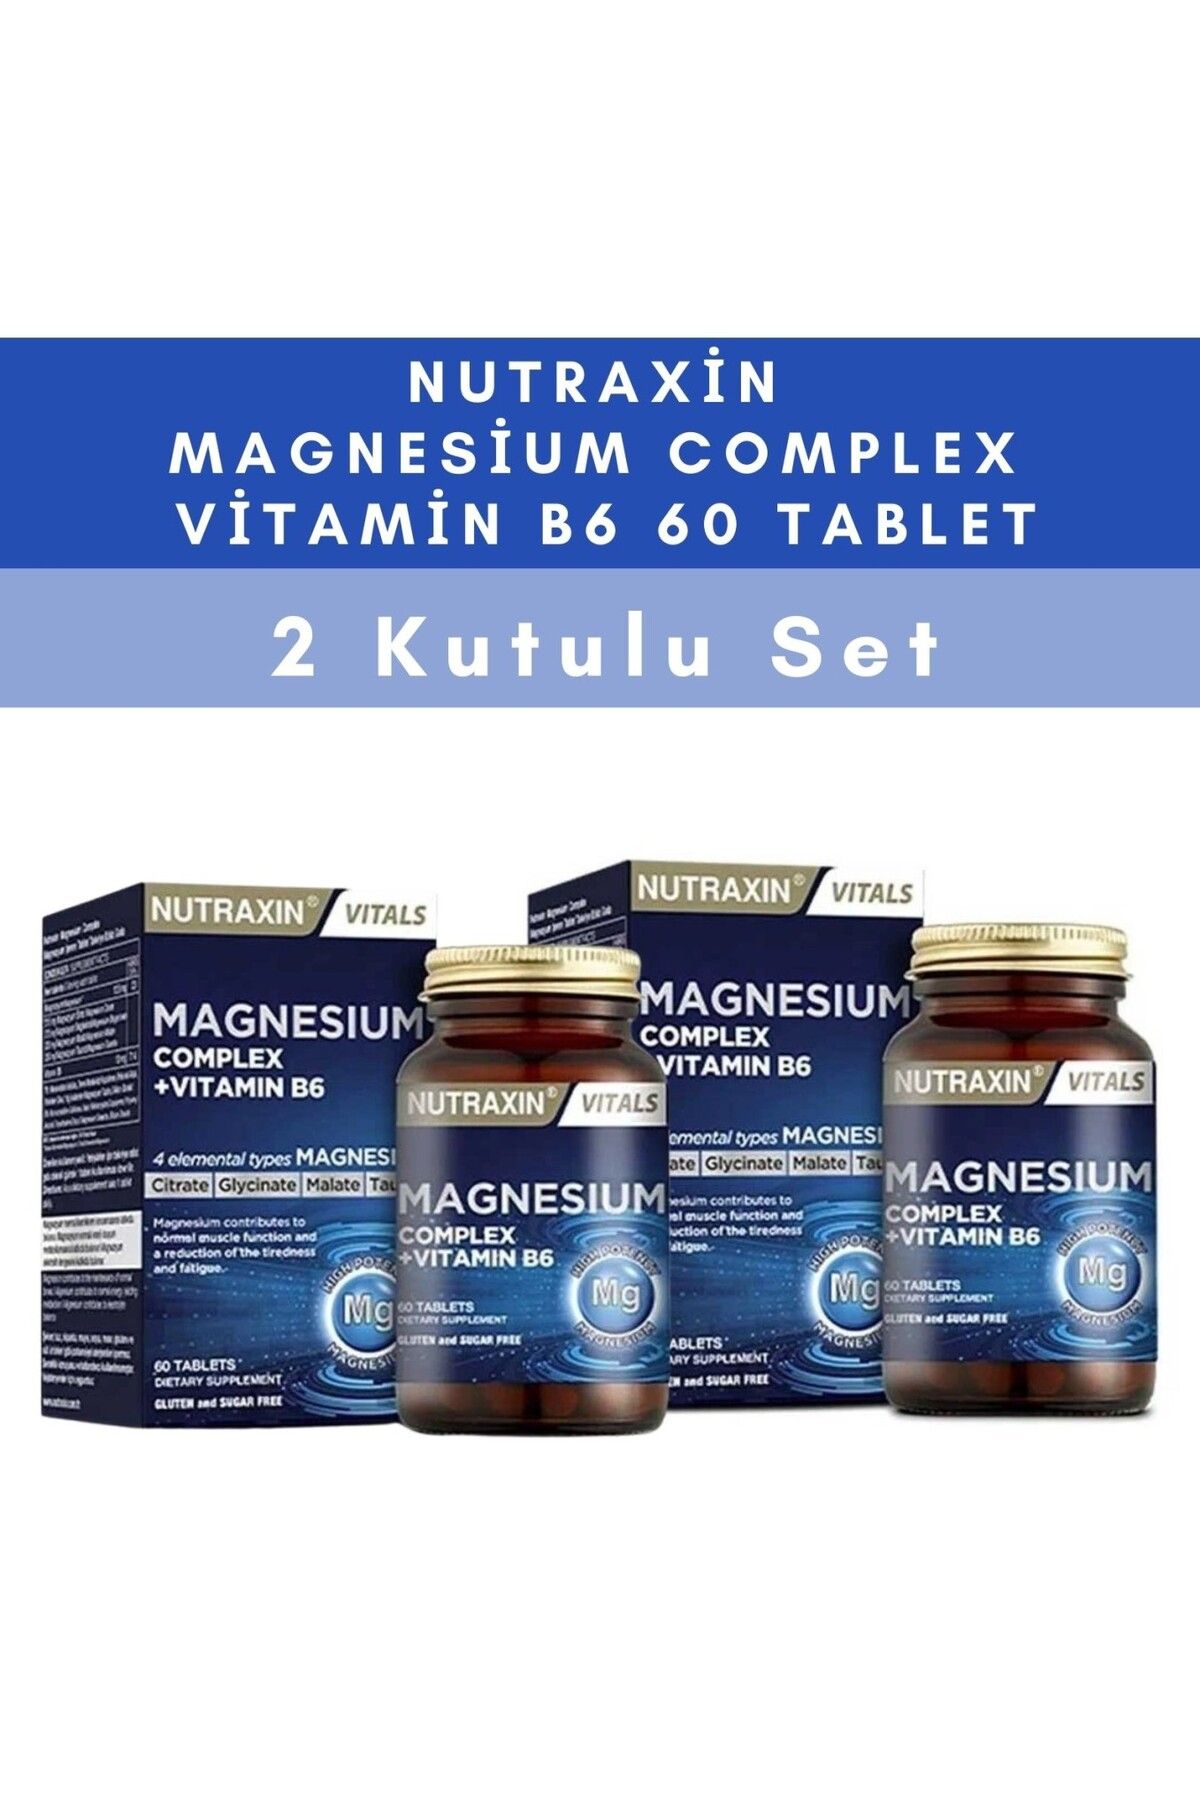 Nutraxin Magnesium Complex Vitamin B6 60 Tablet - 2 KUTULU SET